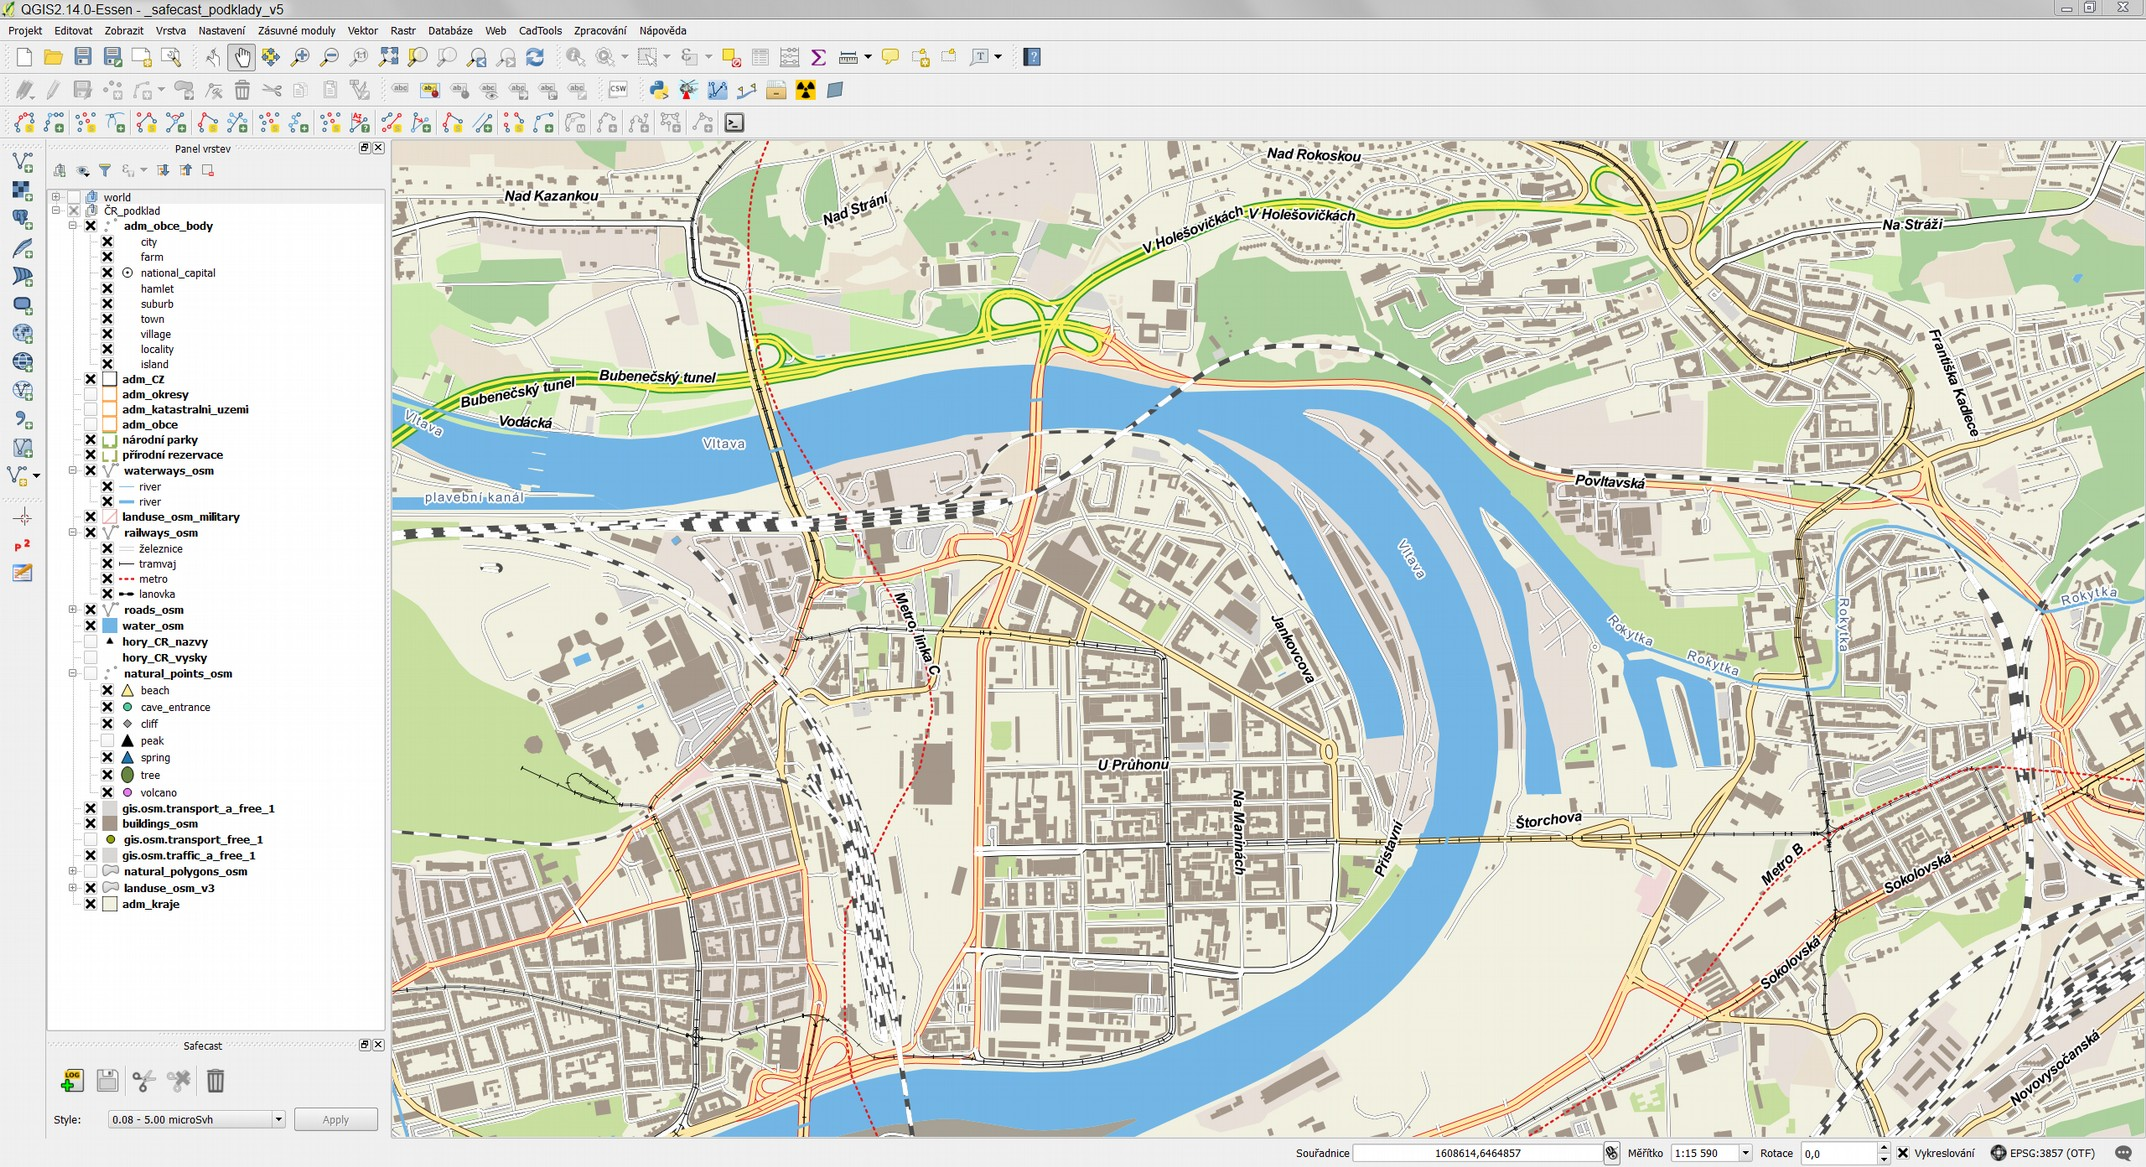 SAFECAST offline mapové podklady nová generace - vektorové, založené opět na OpenStreetMap datech